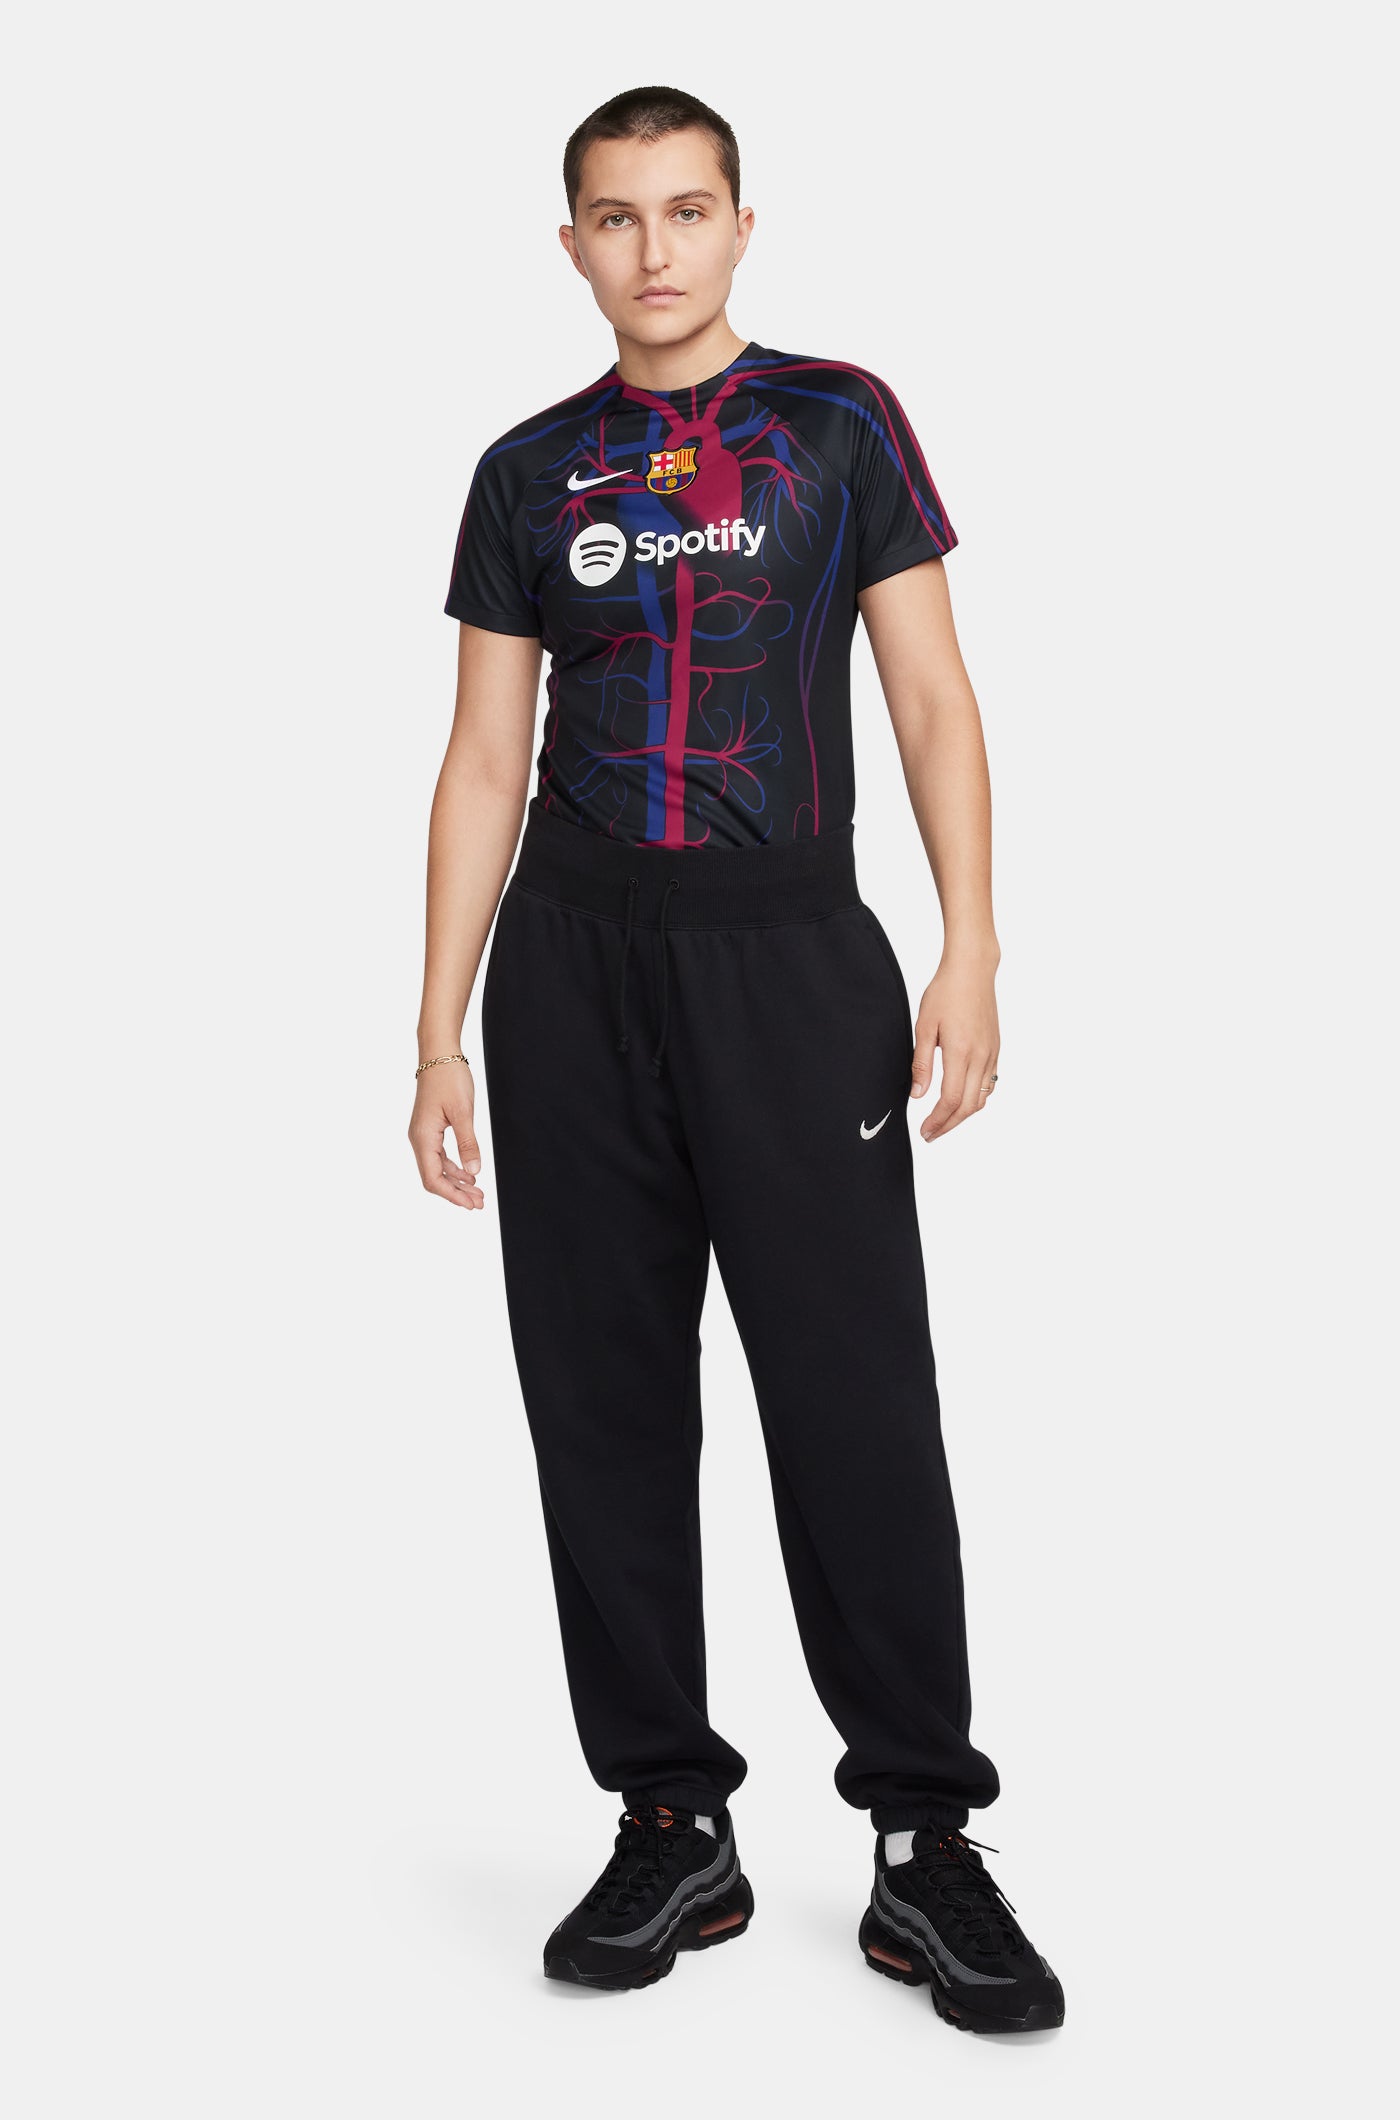 Barça Nike Tank Top – Women – Barça Official Store Spotify Camp Nou